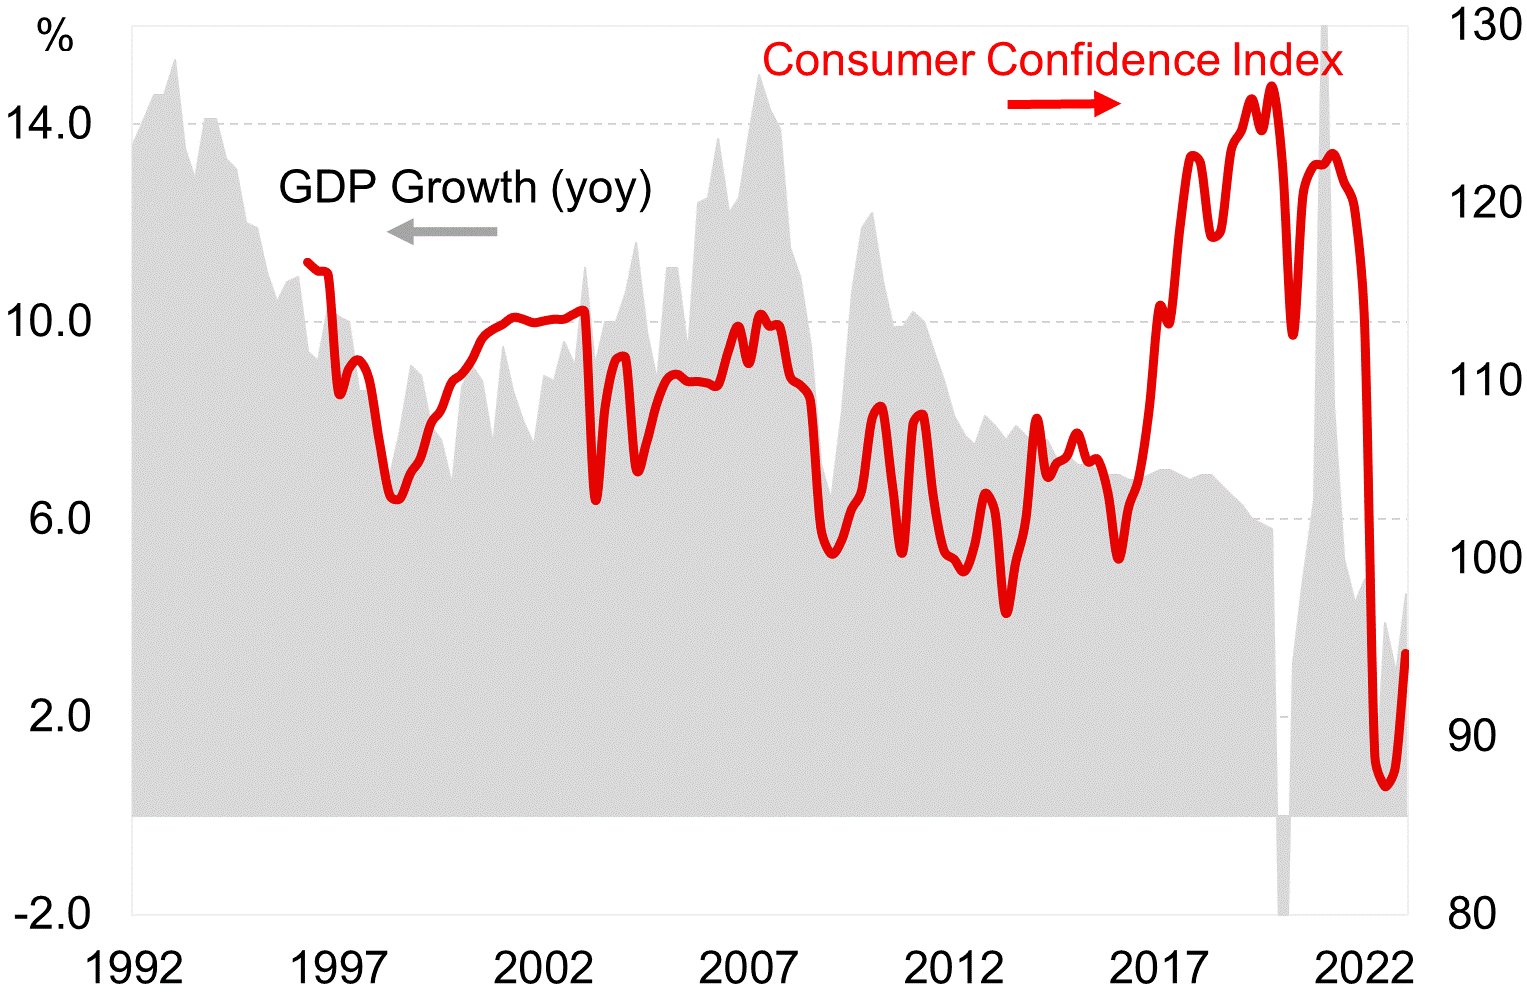 Croissance du PIB réel en Chine et indice de confiance des consommateurs.